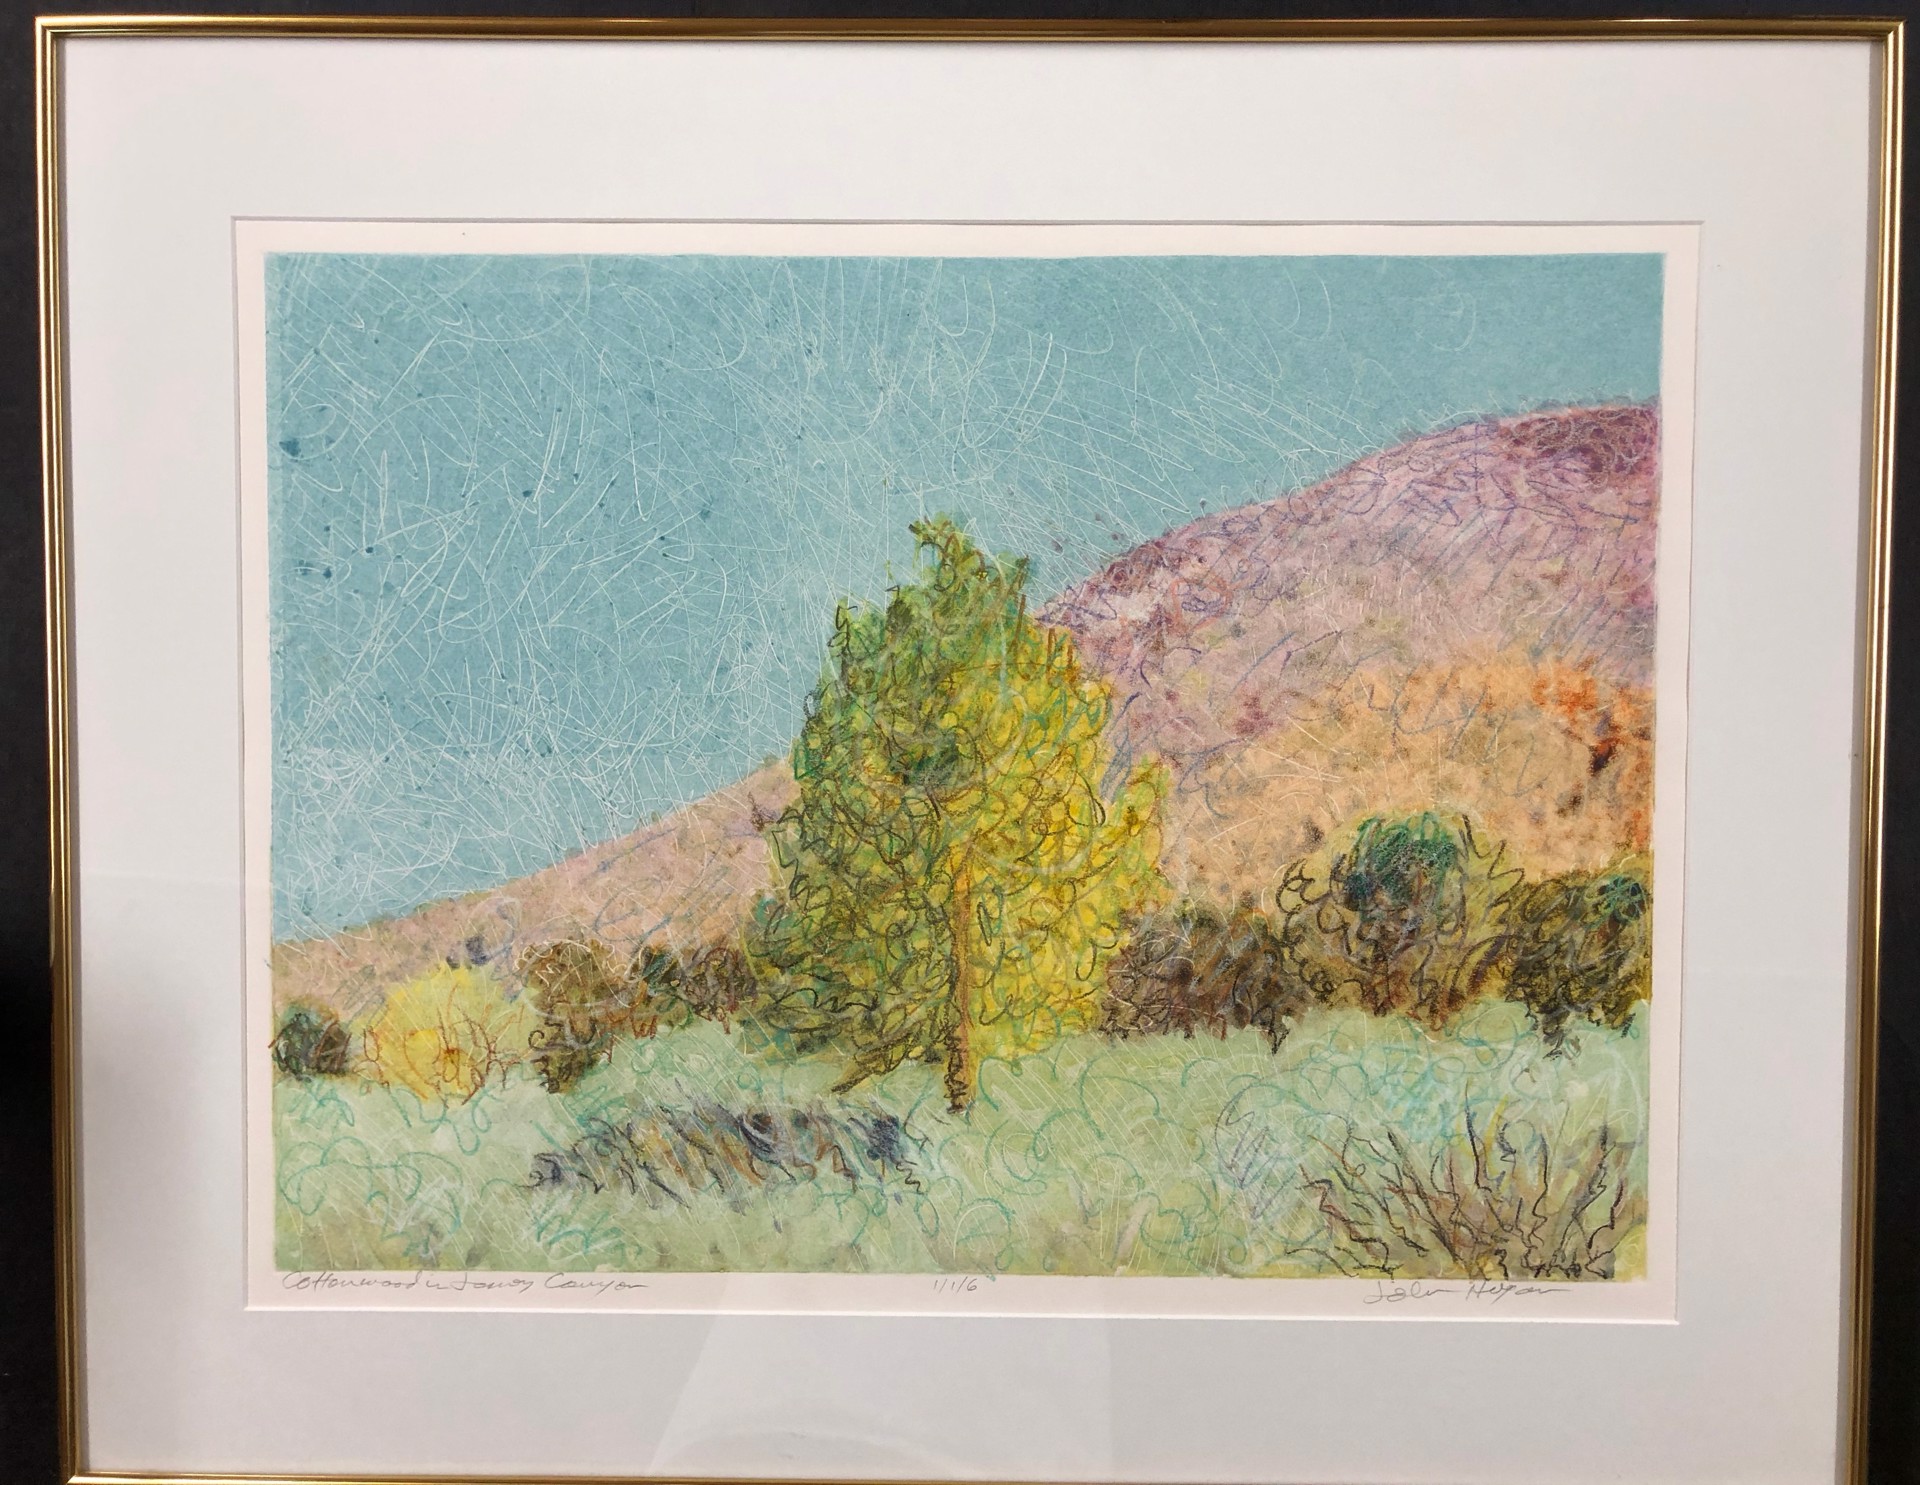 Cotton Wood in Jemez Canyon 1/1/6 by John Hogan